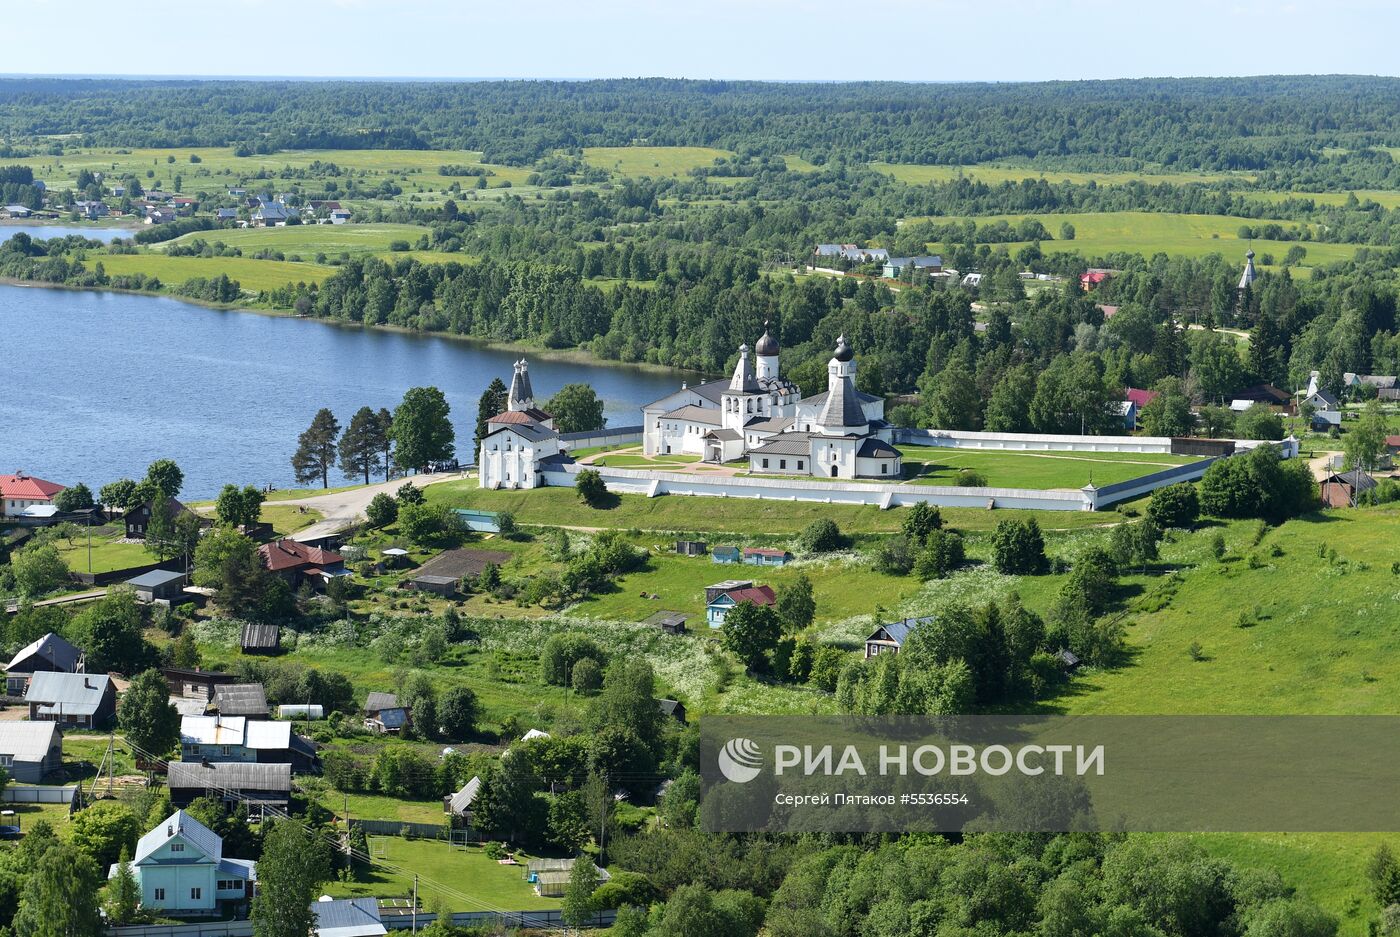 Ферапонтов Белозерский монастырь в Вологодской области